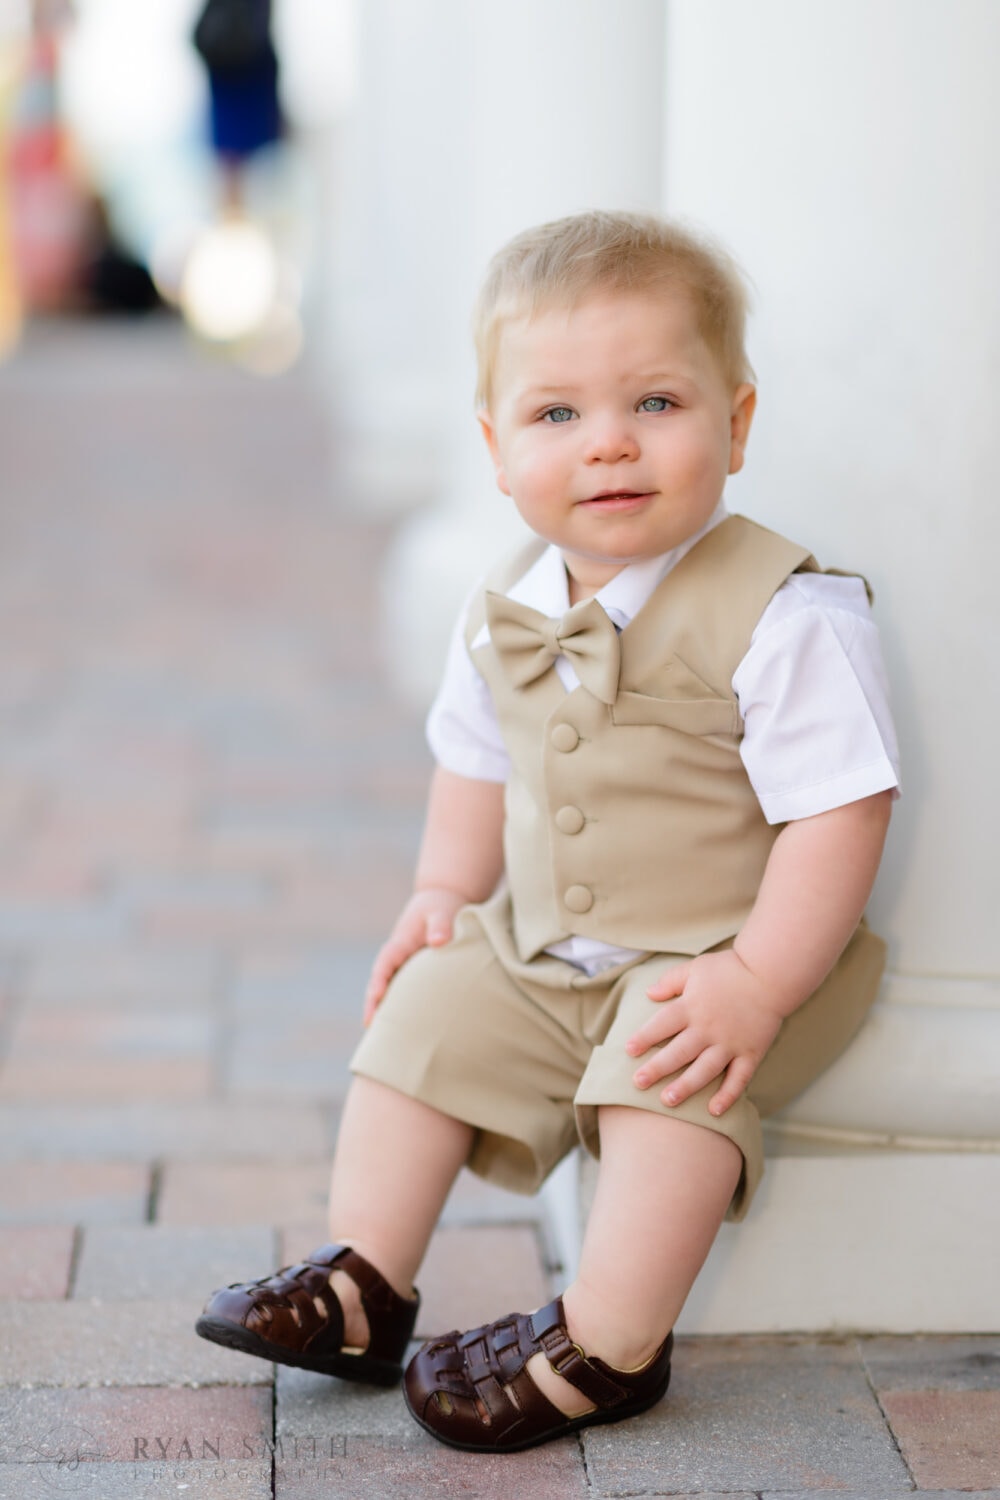 Cute baby boy dressed in suit and tie - Ocean Club